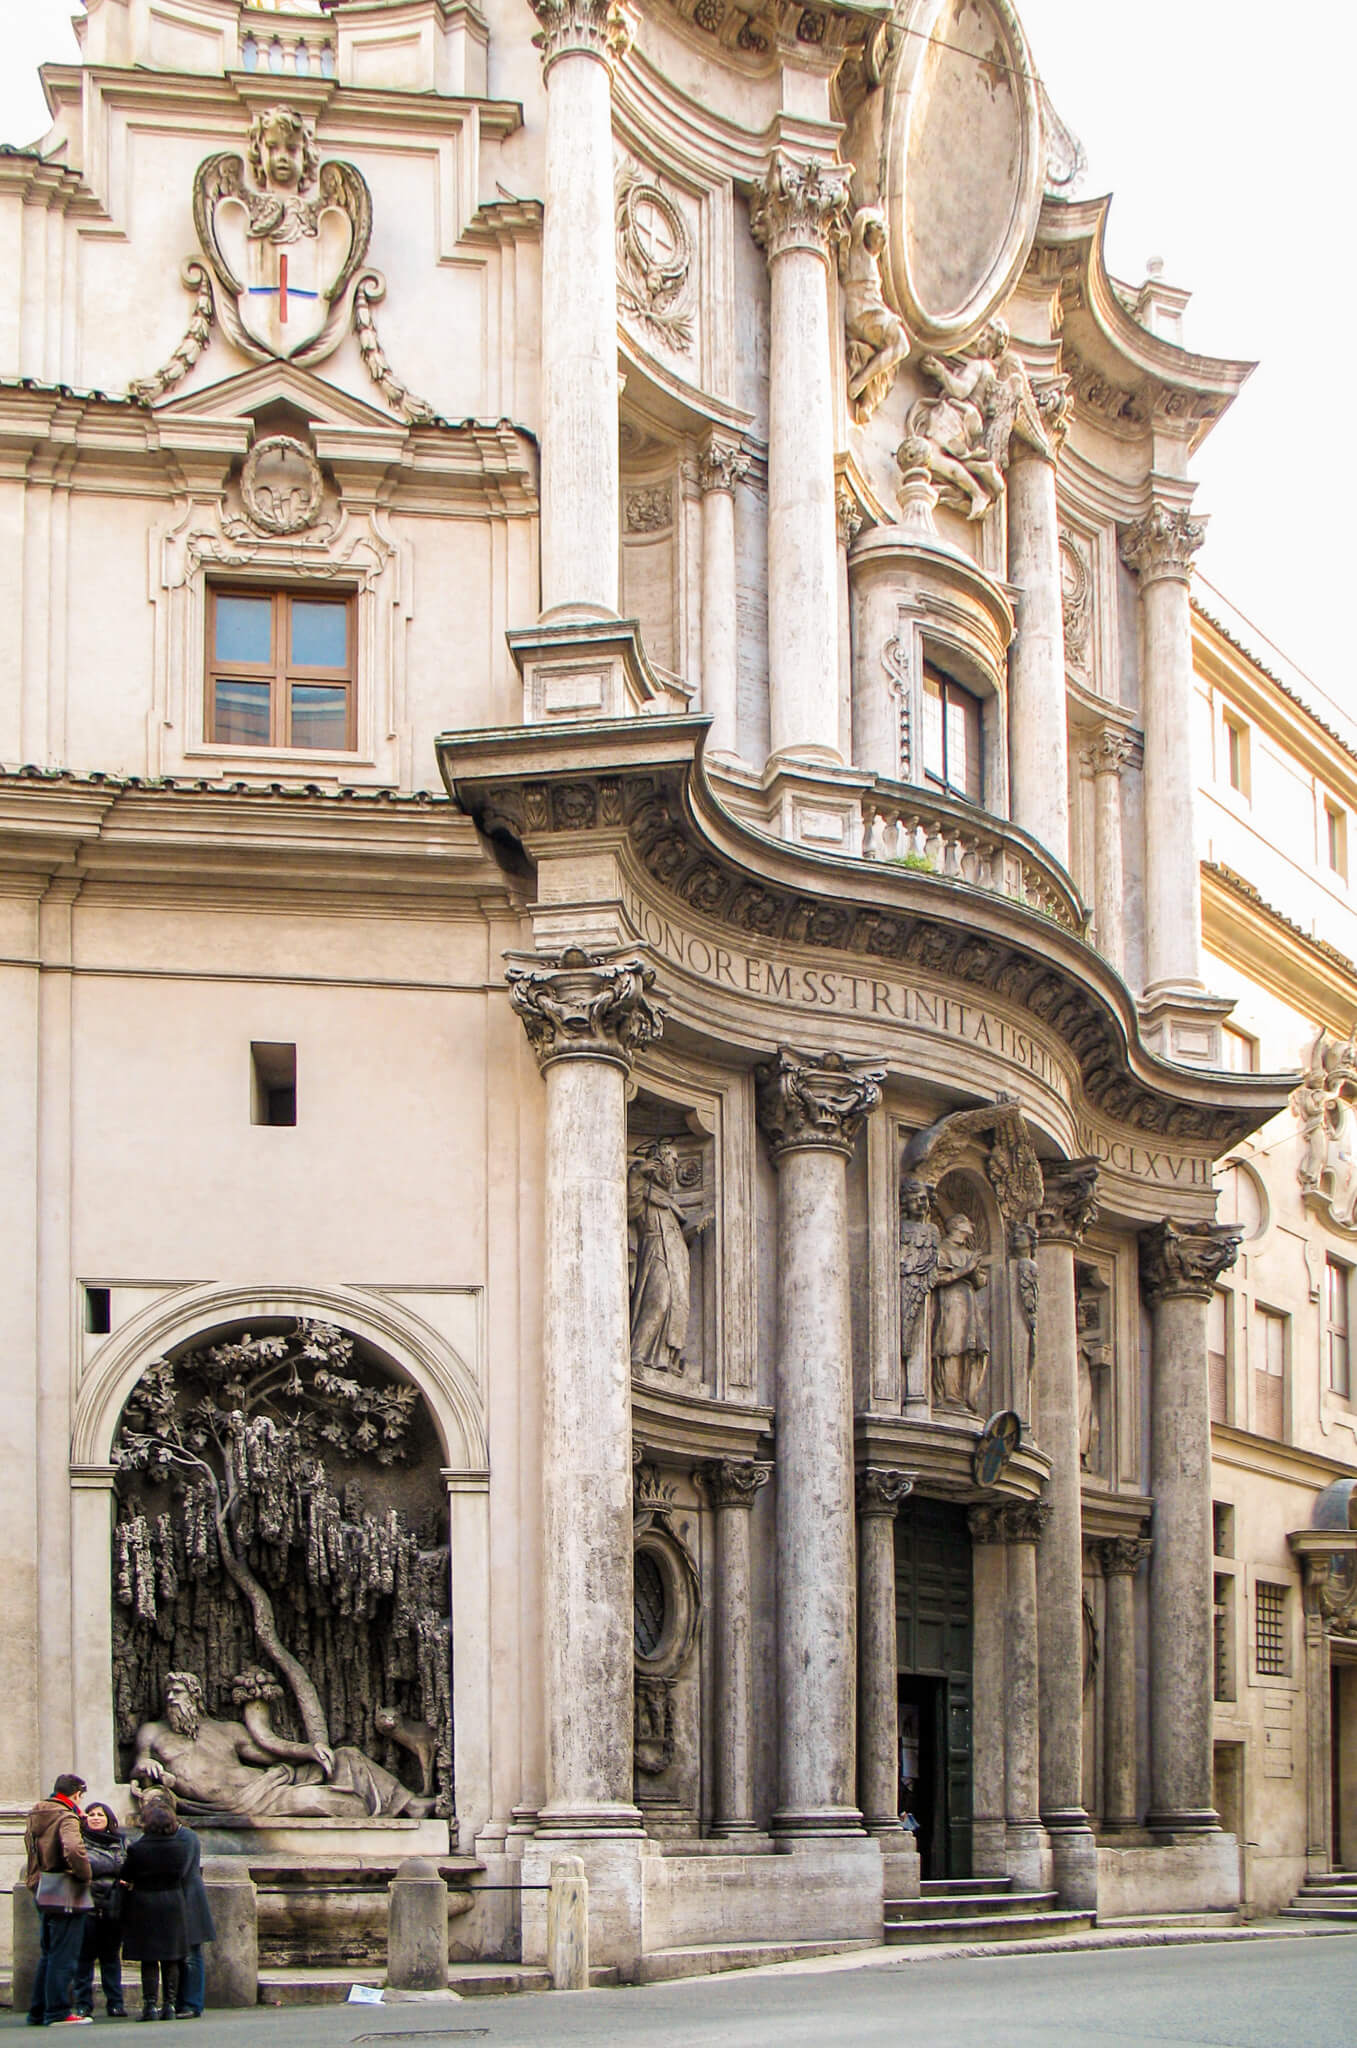 The facade of San Carlo alle Quattro Fontane